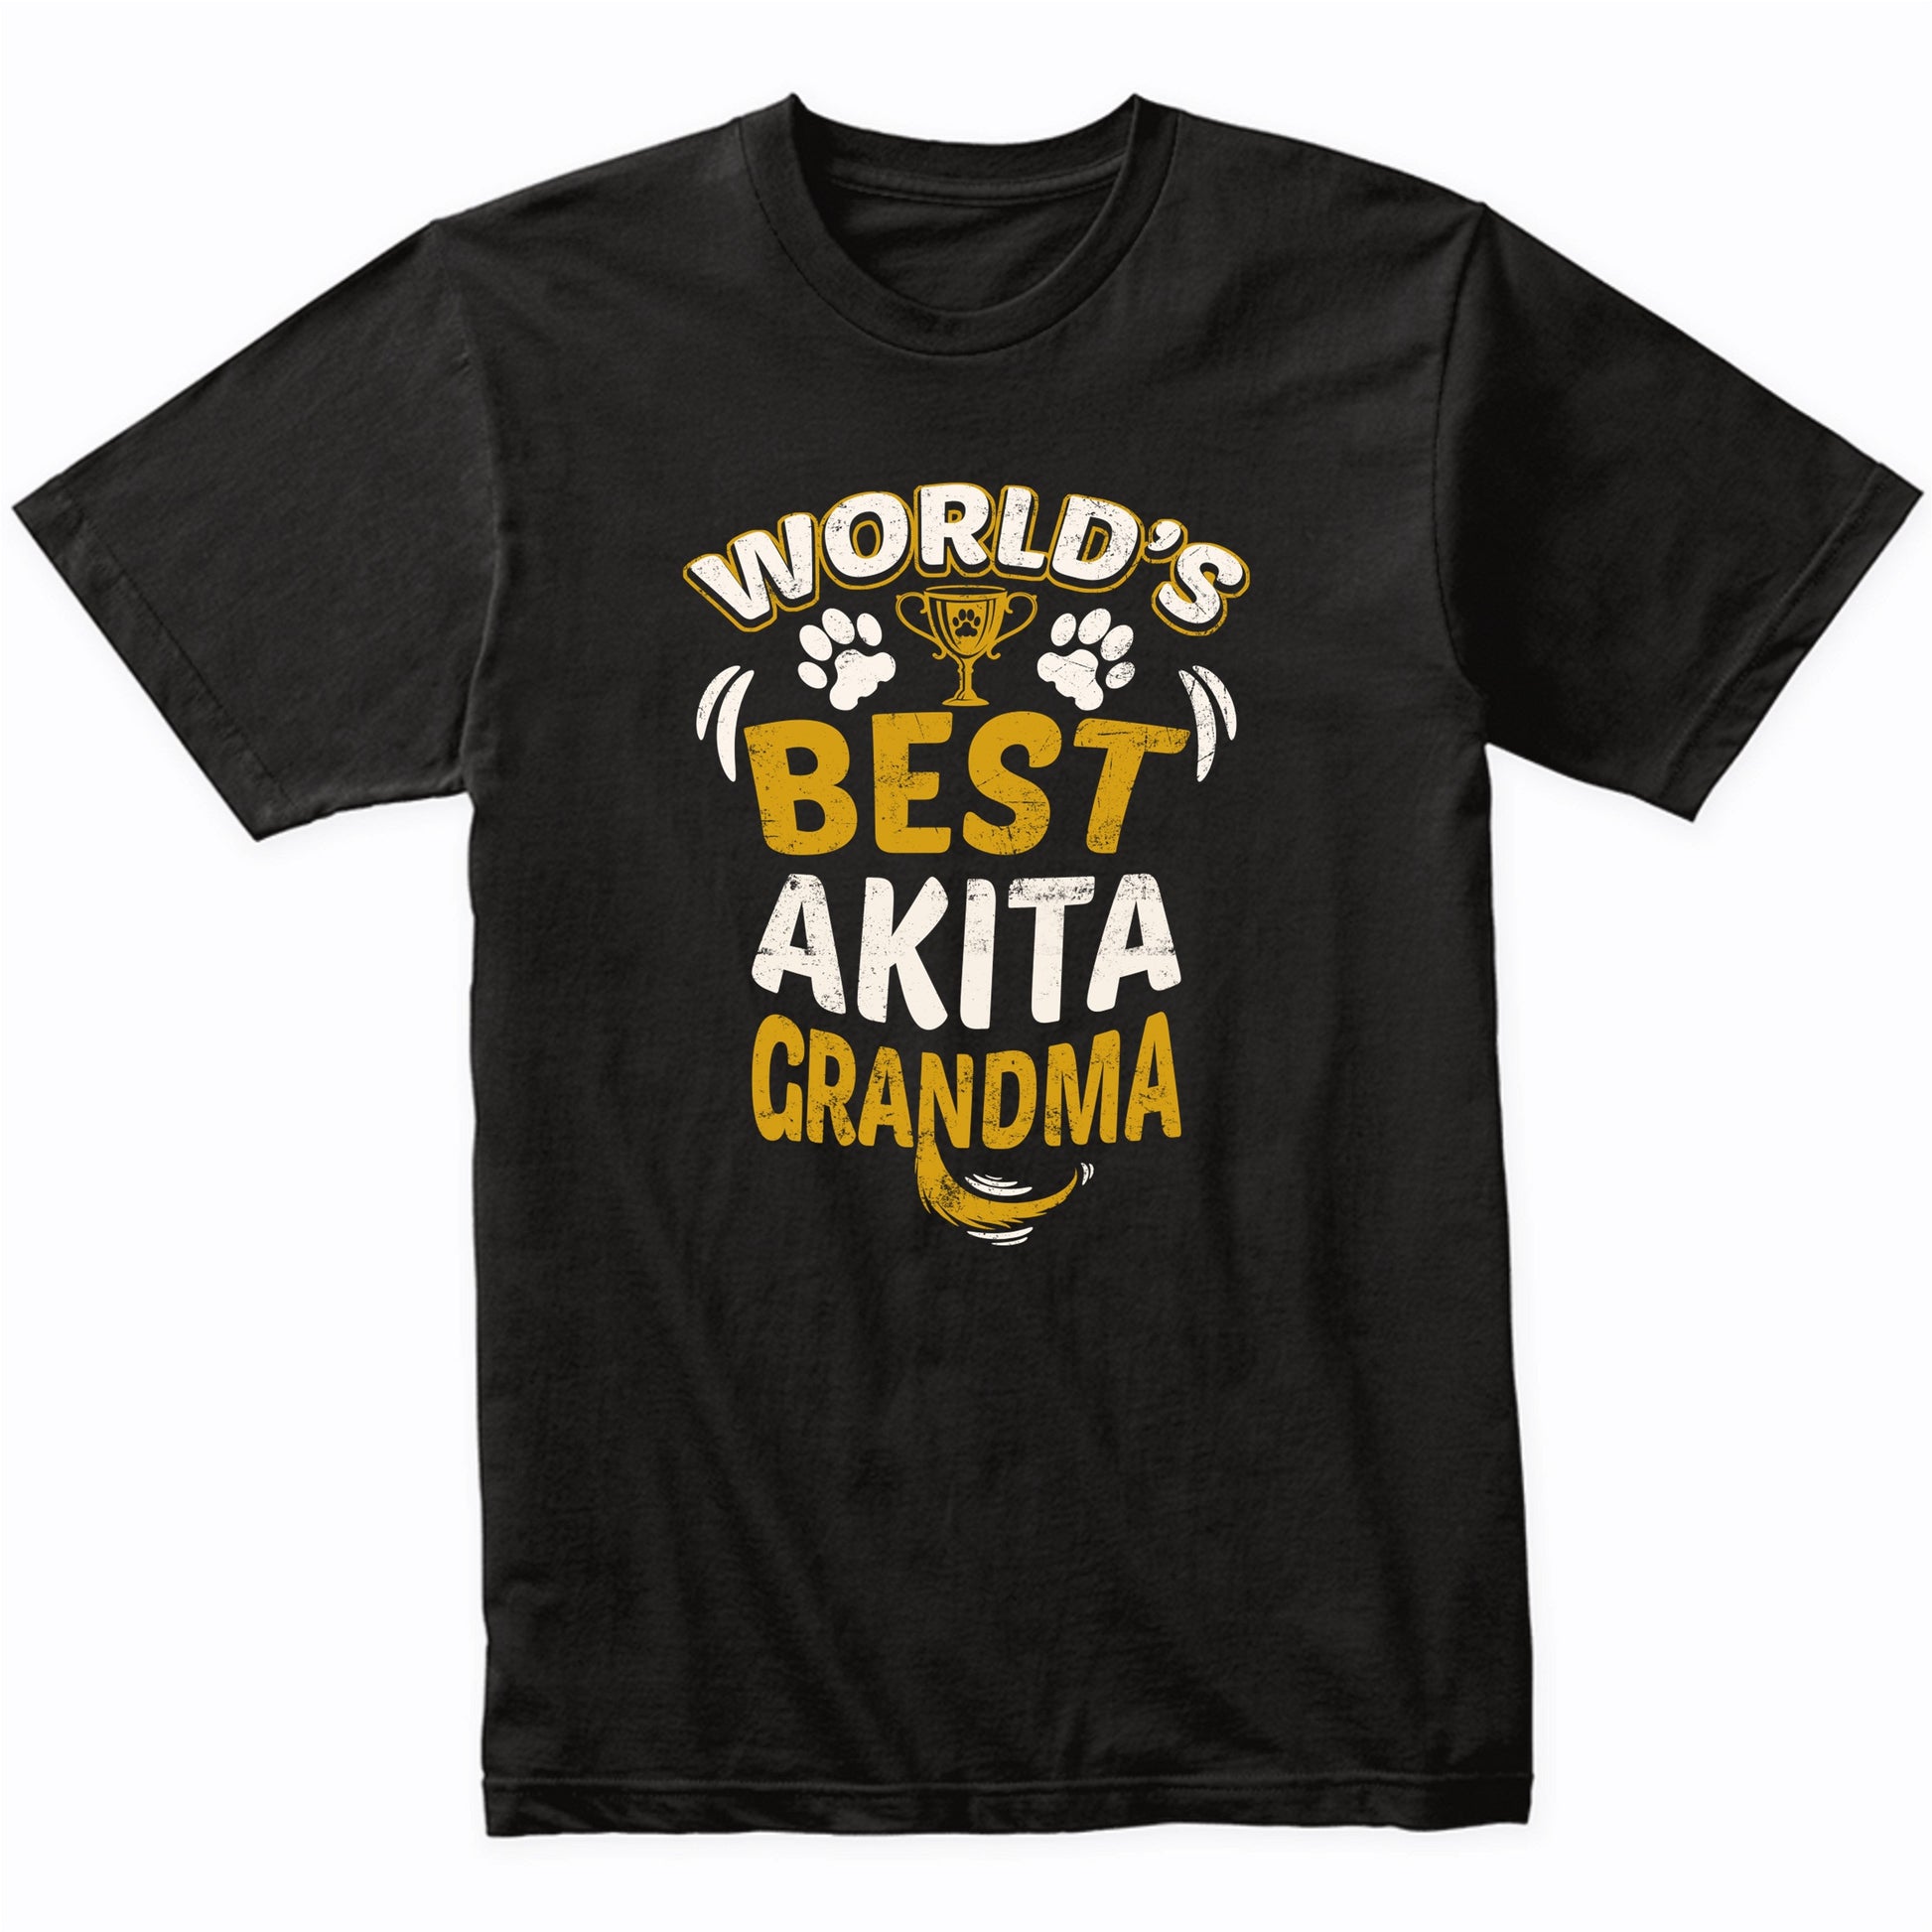 World's Best Akita Grandma Graphic T-Shirt